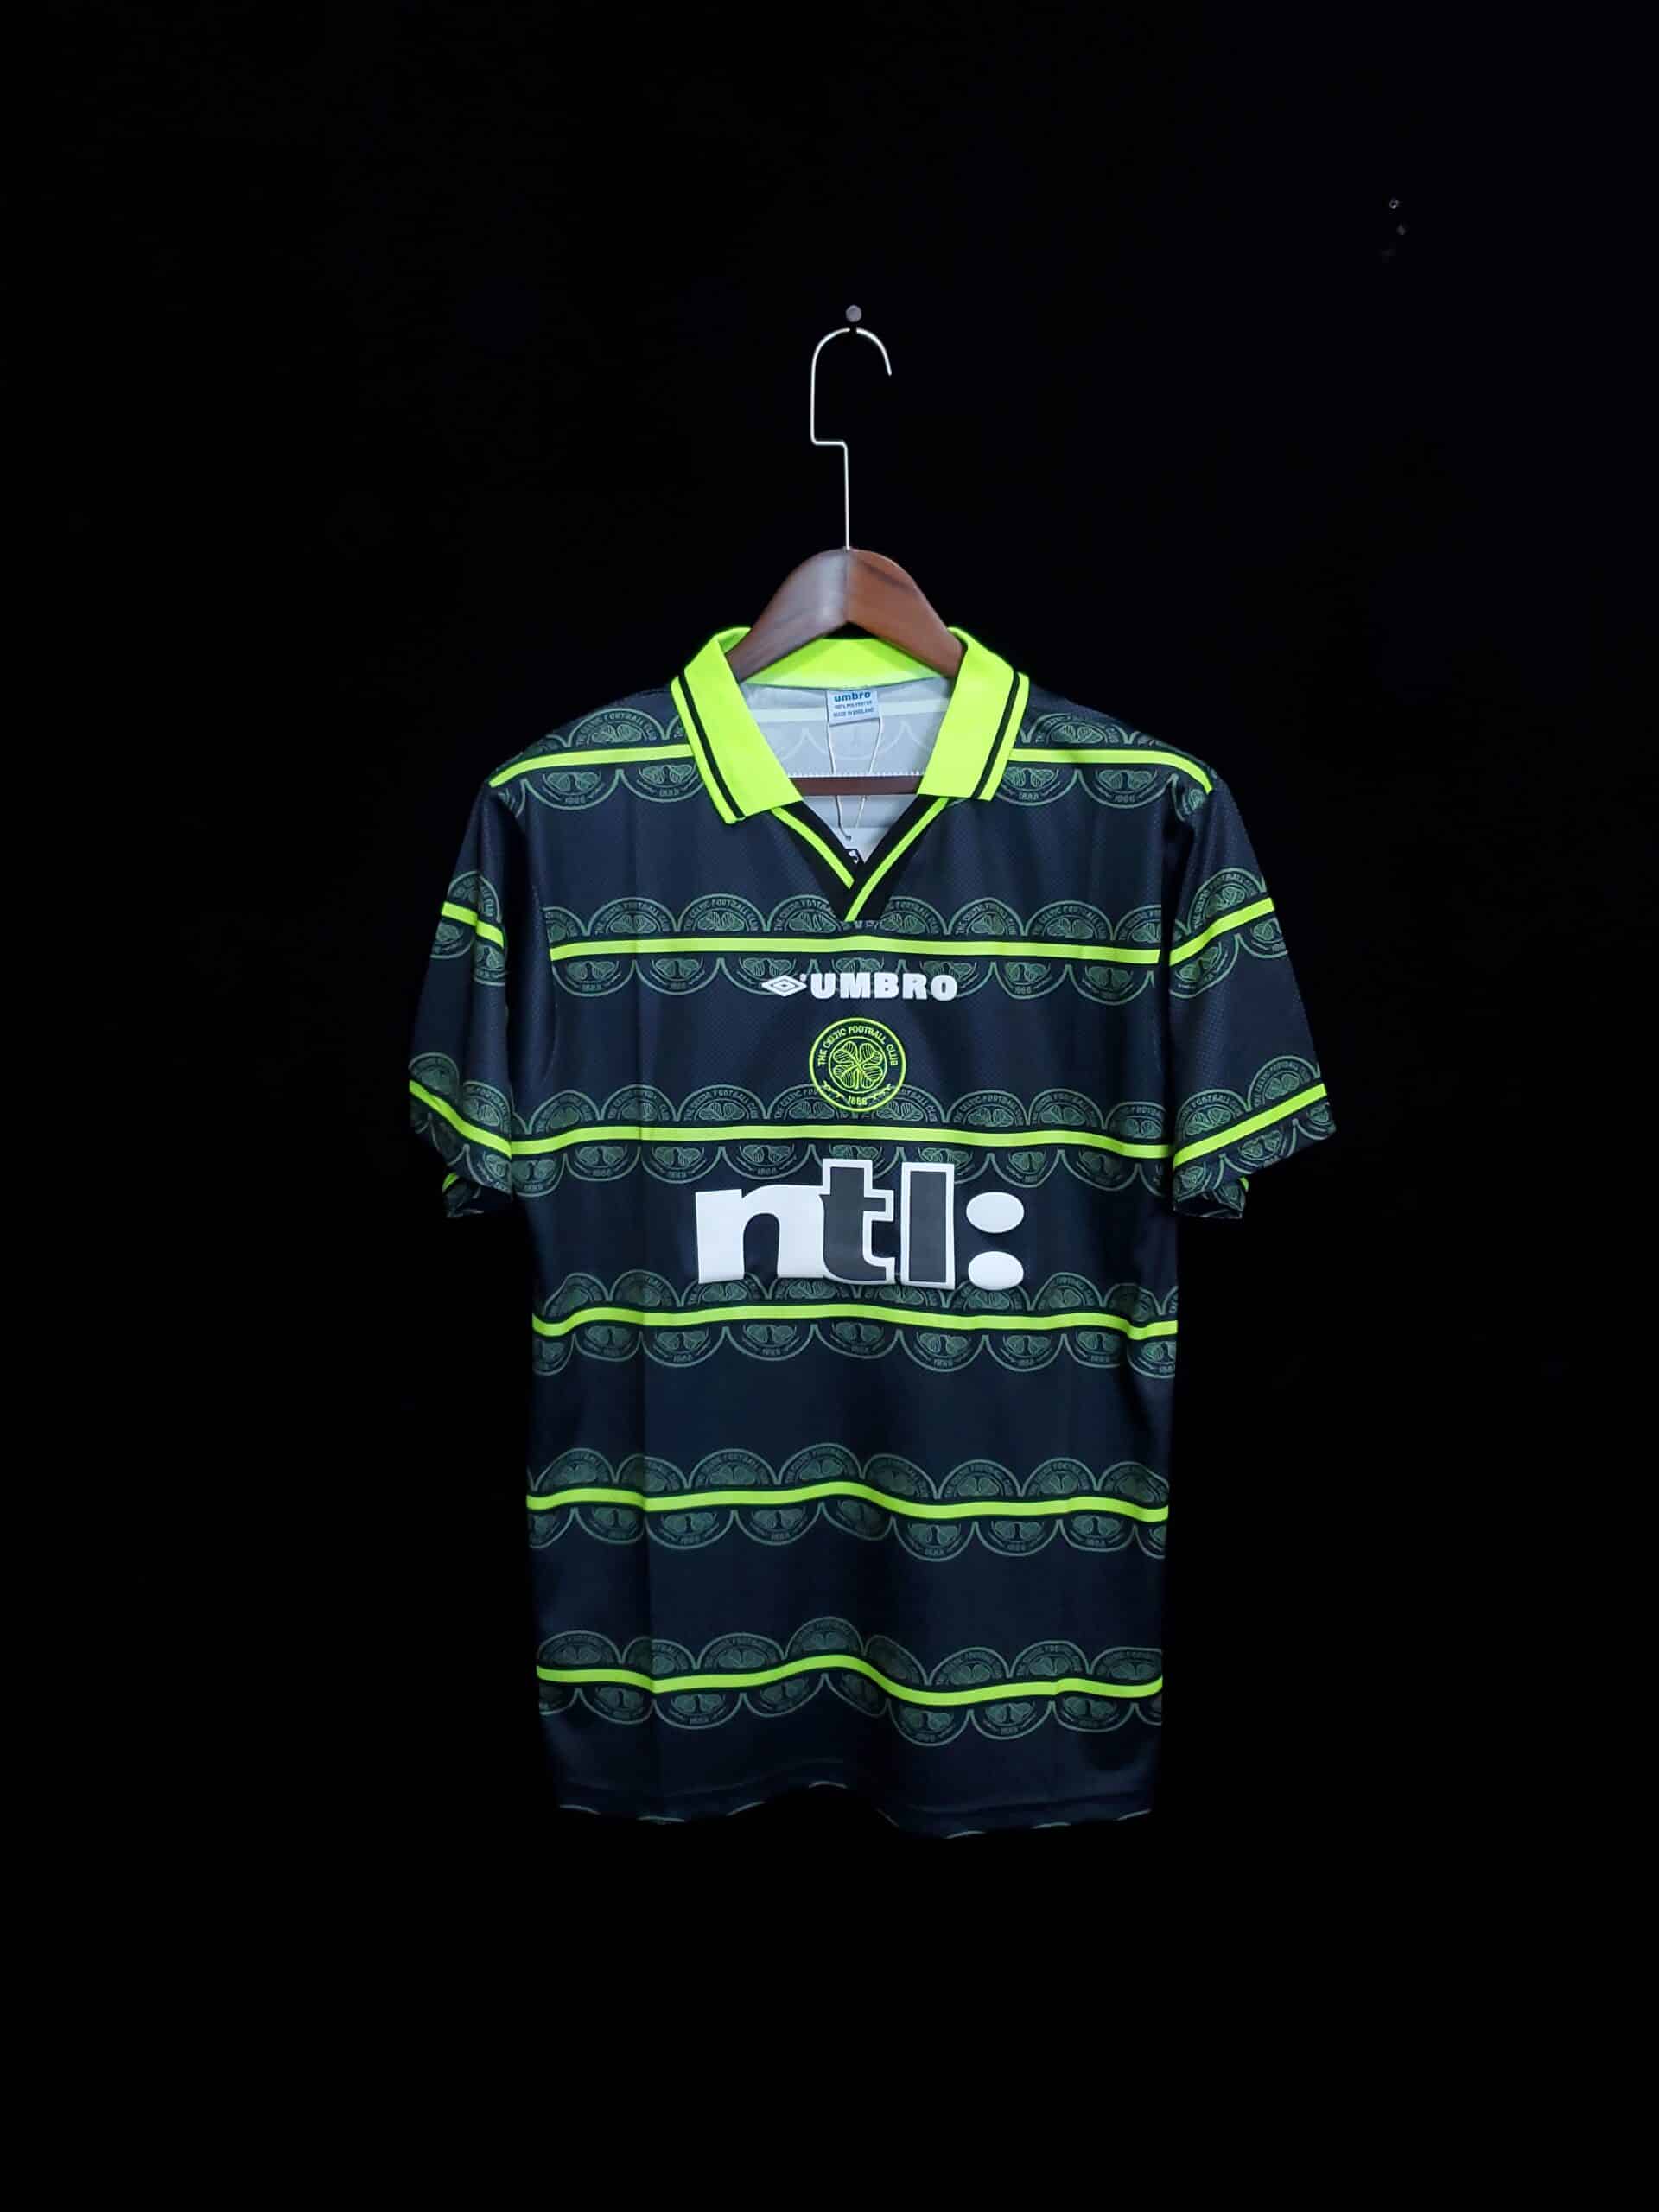 Glasgow Celtic - 1999/2000 Away kit